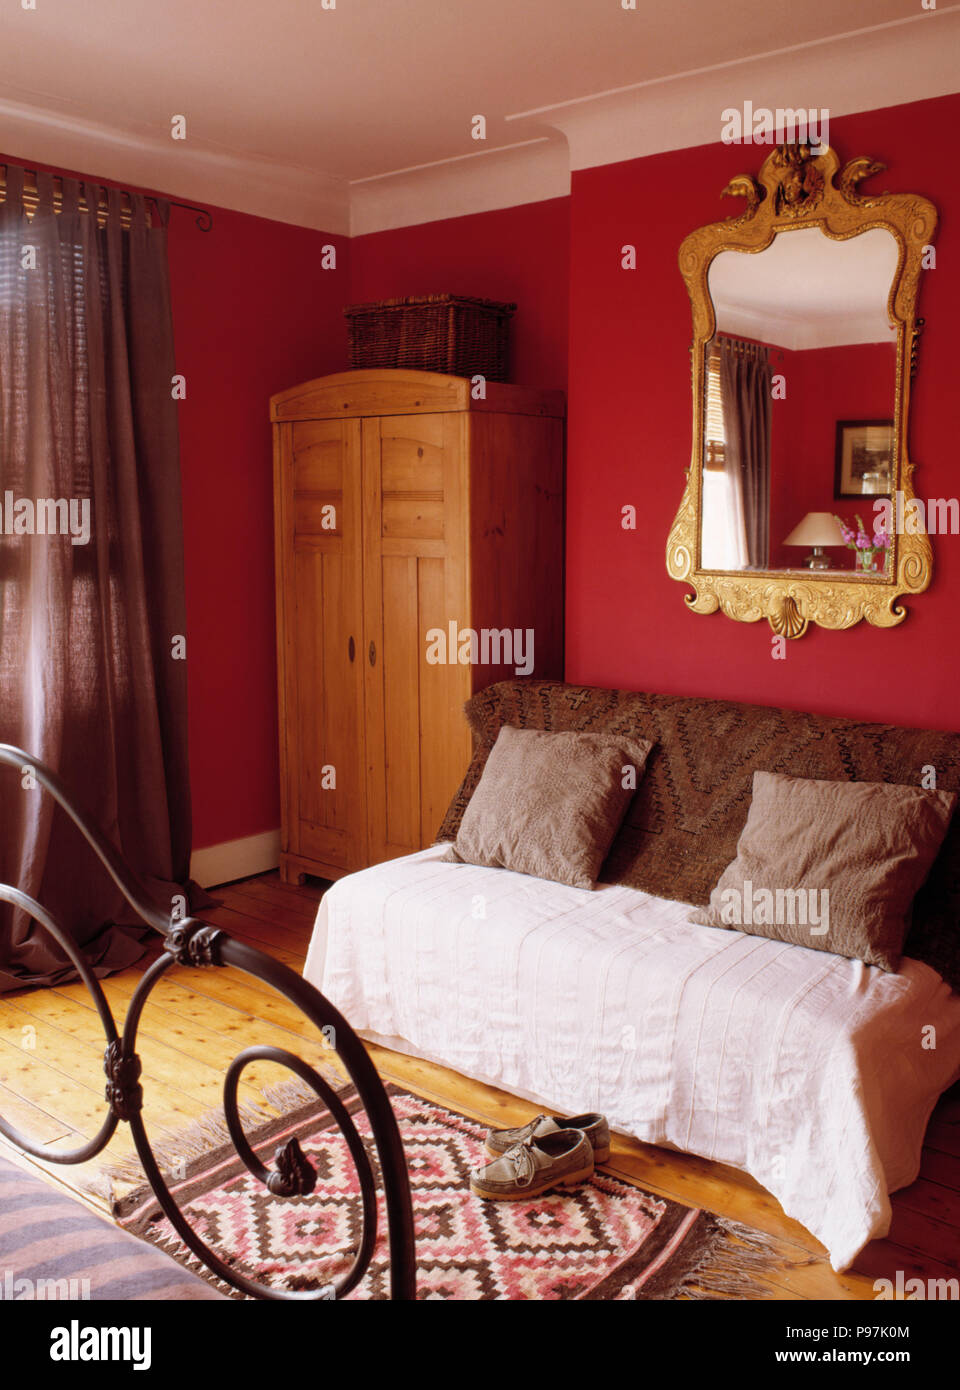 Reich verzierten vergoldeten Spiegel über Couch mit braun Kissen werfen in  Rot und Creme Schlafzimmer mit Schrank aus Kiefernholz Stockfotografie -  Alamy